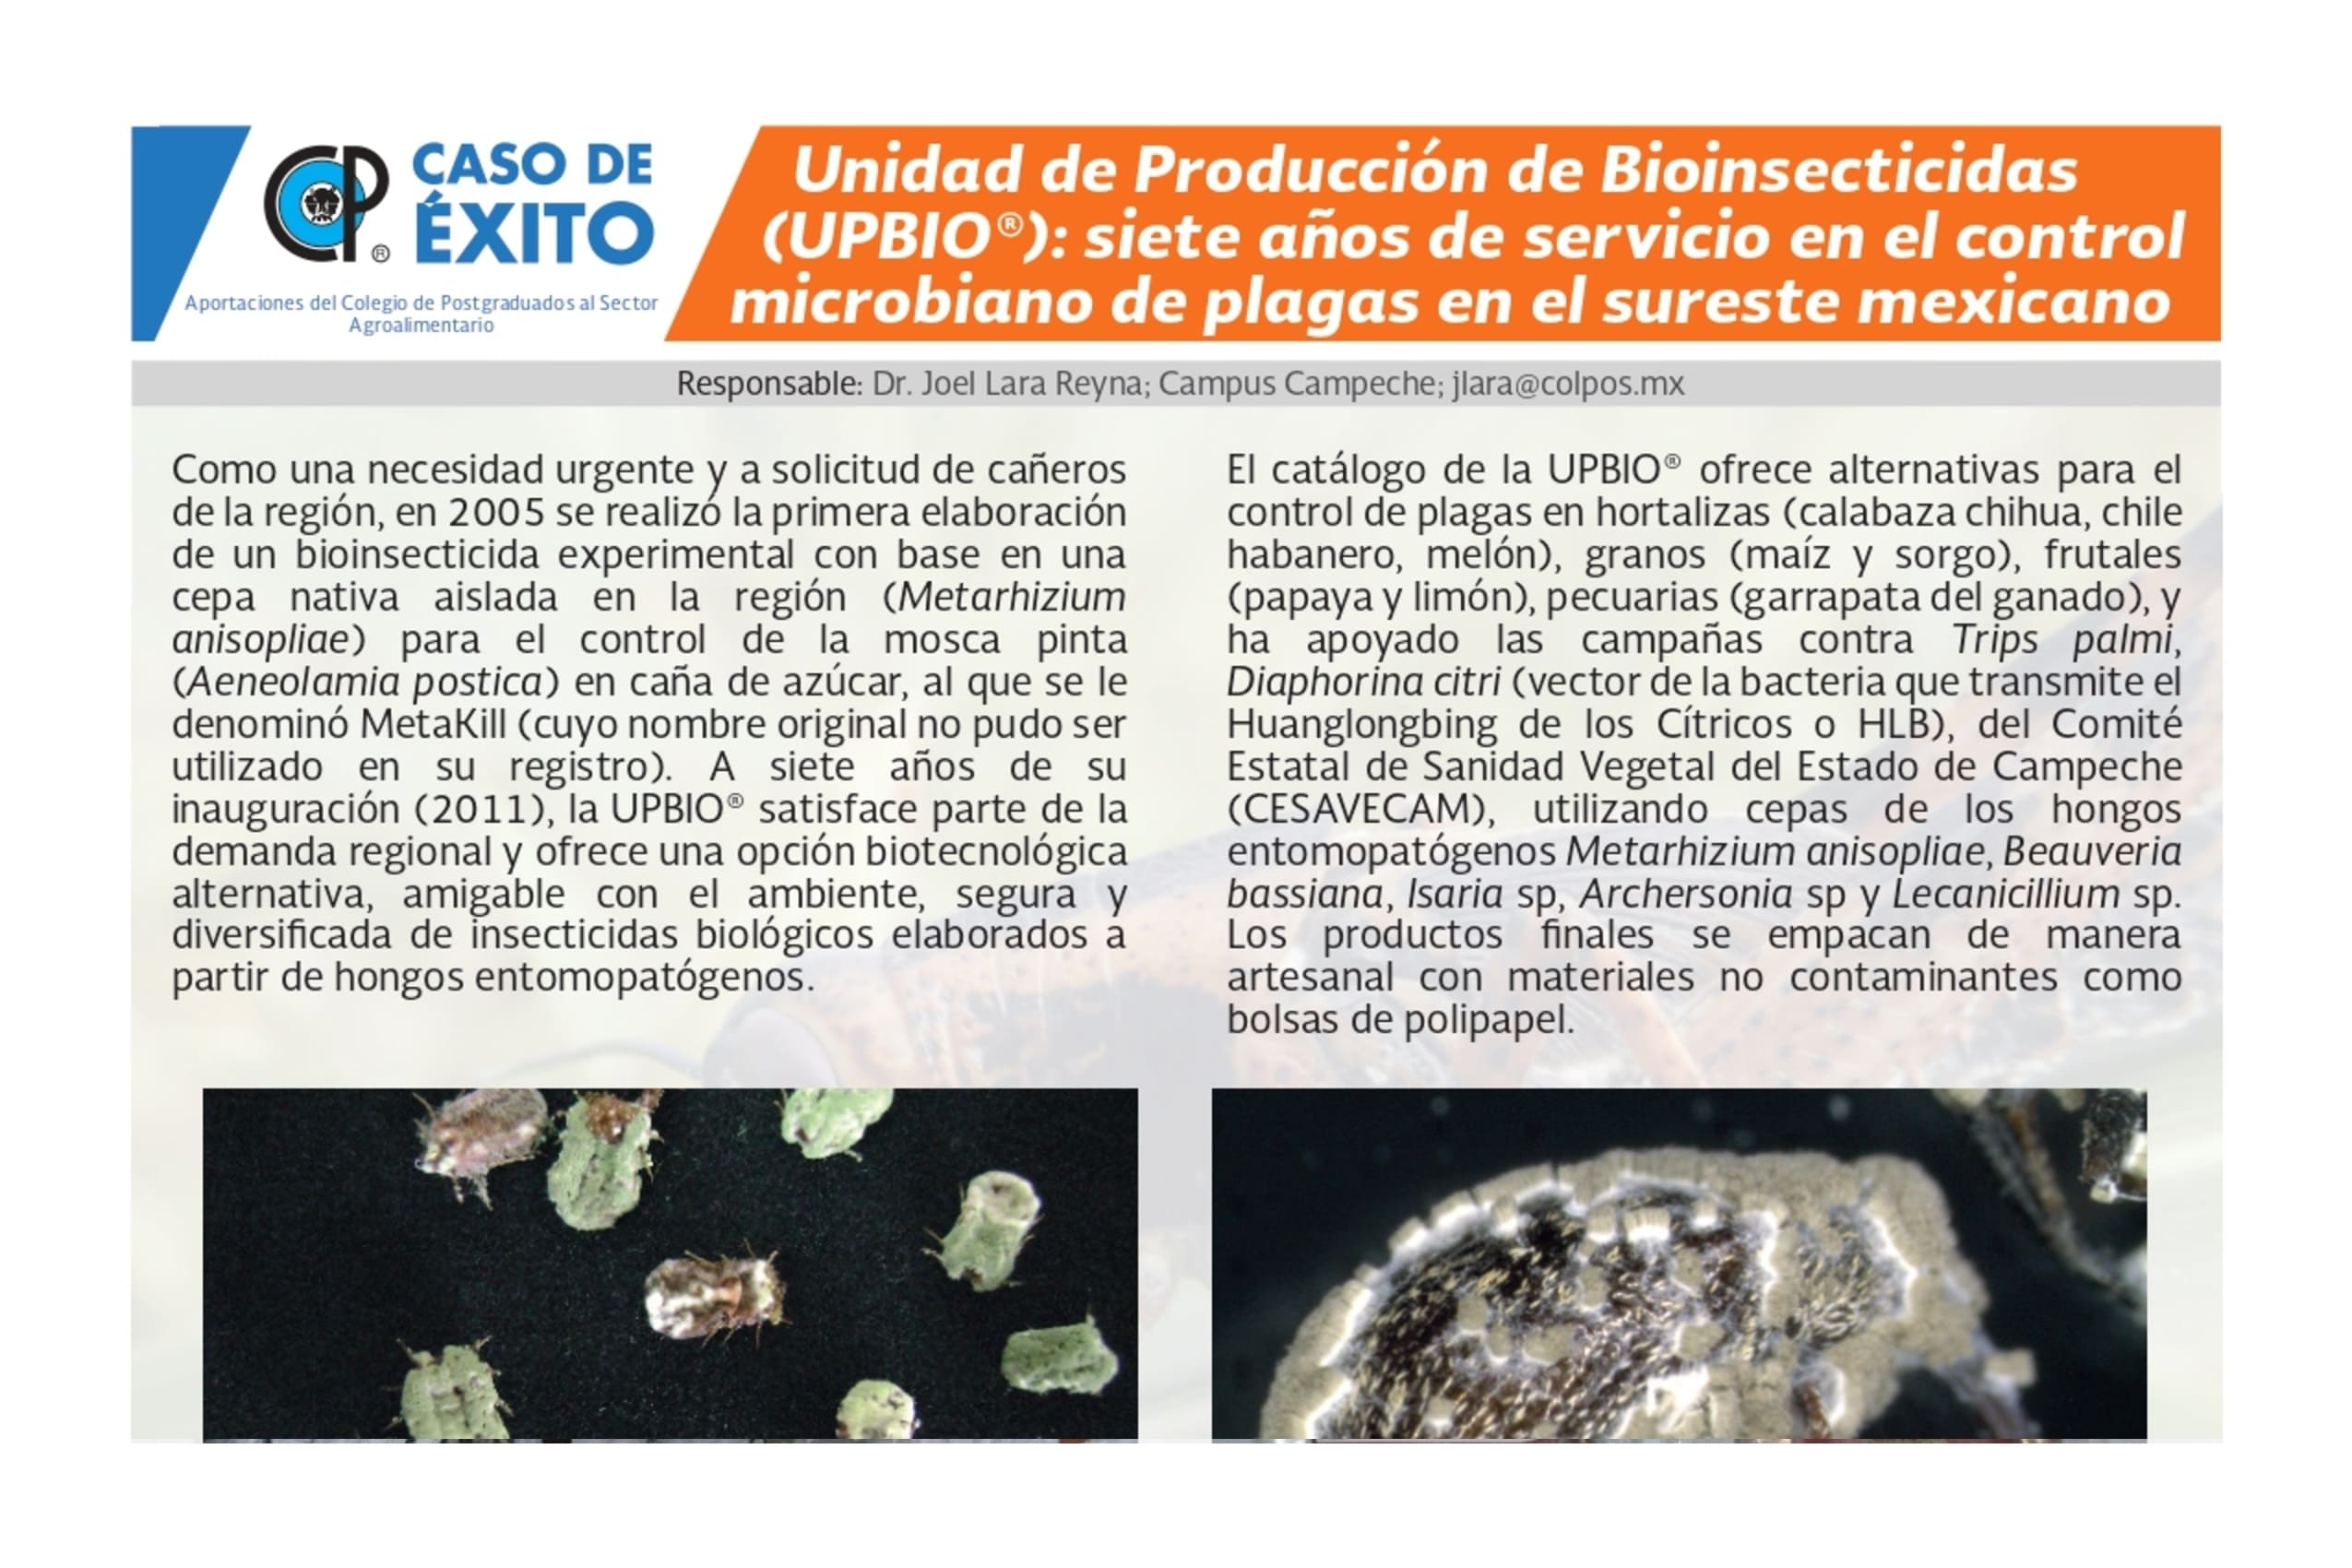 Unidad de Producción de Bioinsecticidas (UPBIO®): siete años de servicio en el control microbiano de plagas en el sureste mexicano.